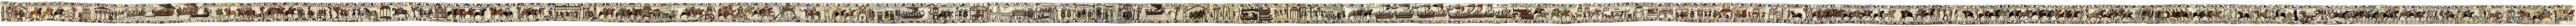 Teoretikere diskuterer, om Bayeux-tapetet er en forløber for tegneserier.  